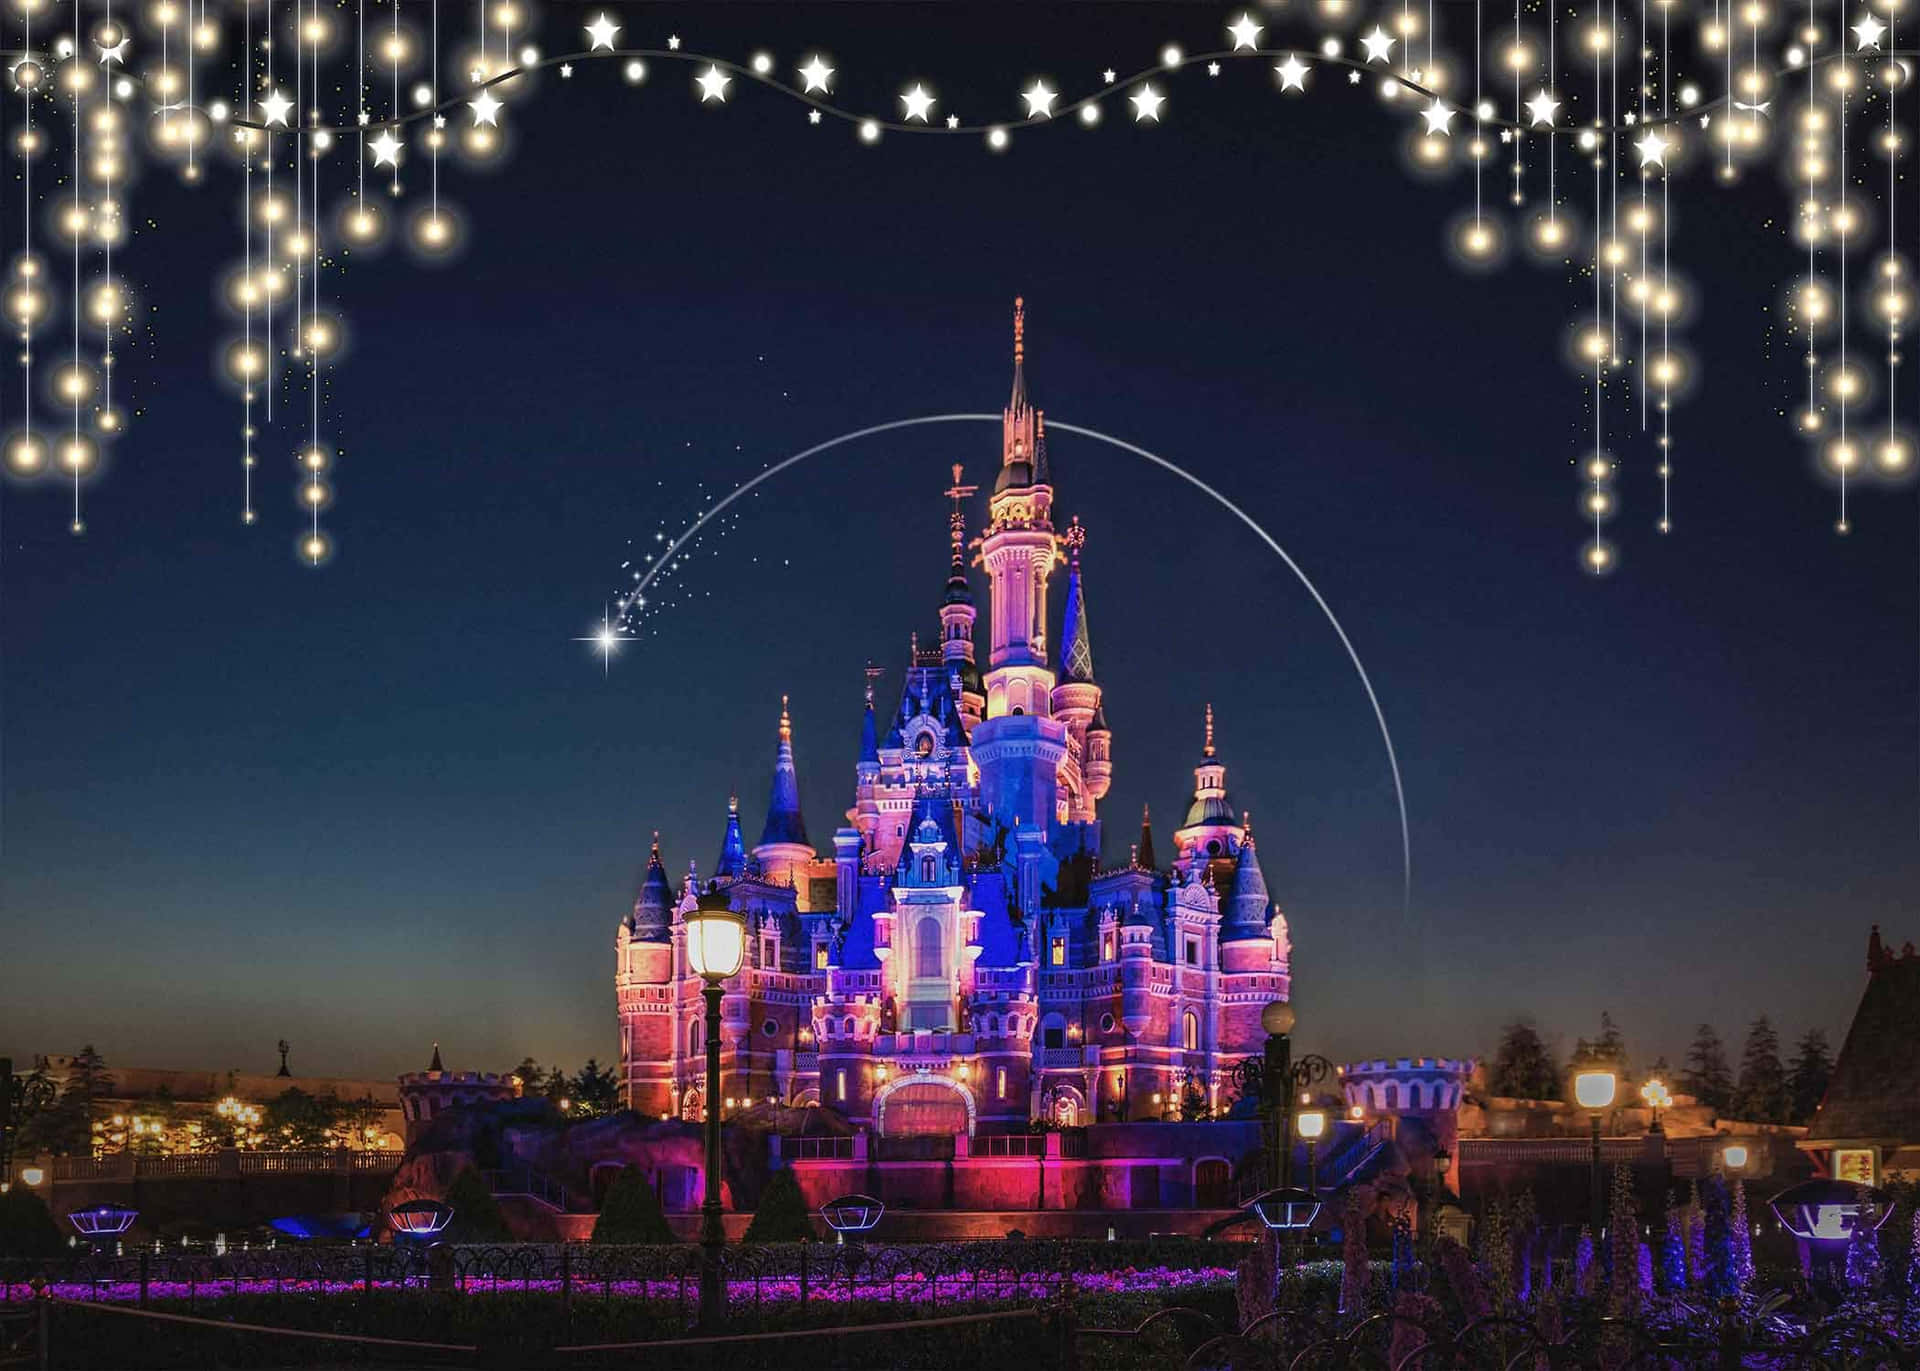 Billedeaf Det Ikoniske Disney Slot Og En Smuk Pink Himmel.